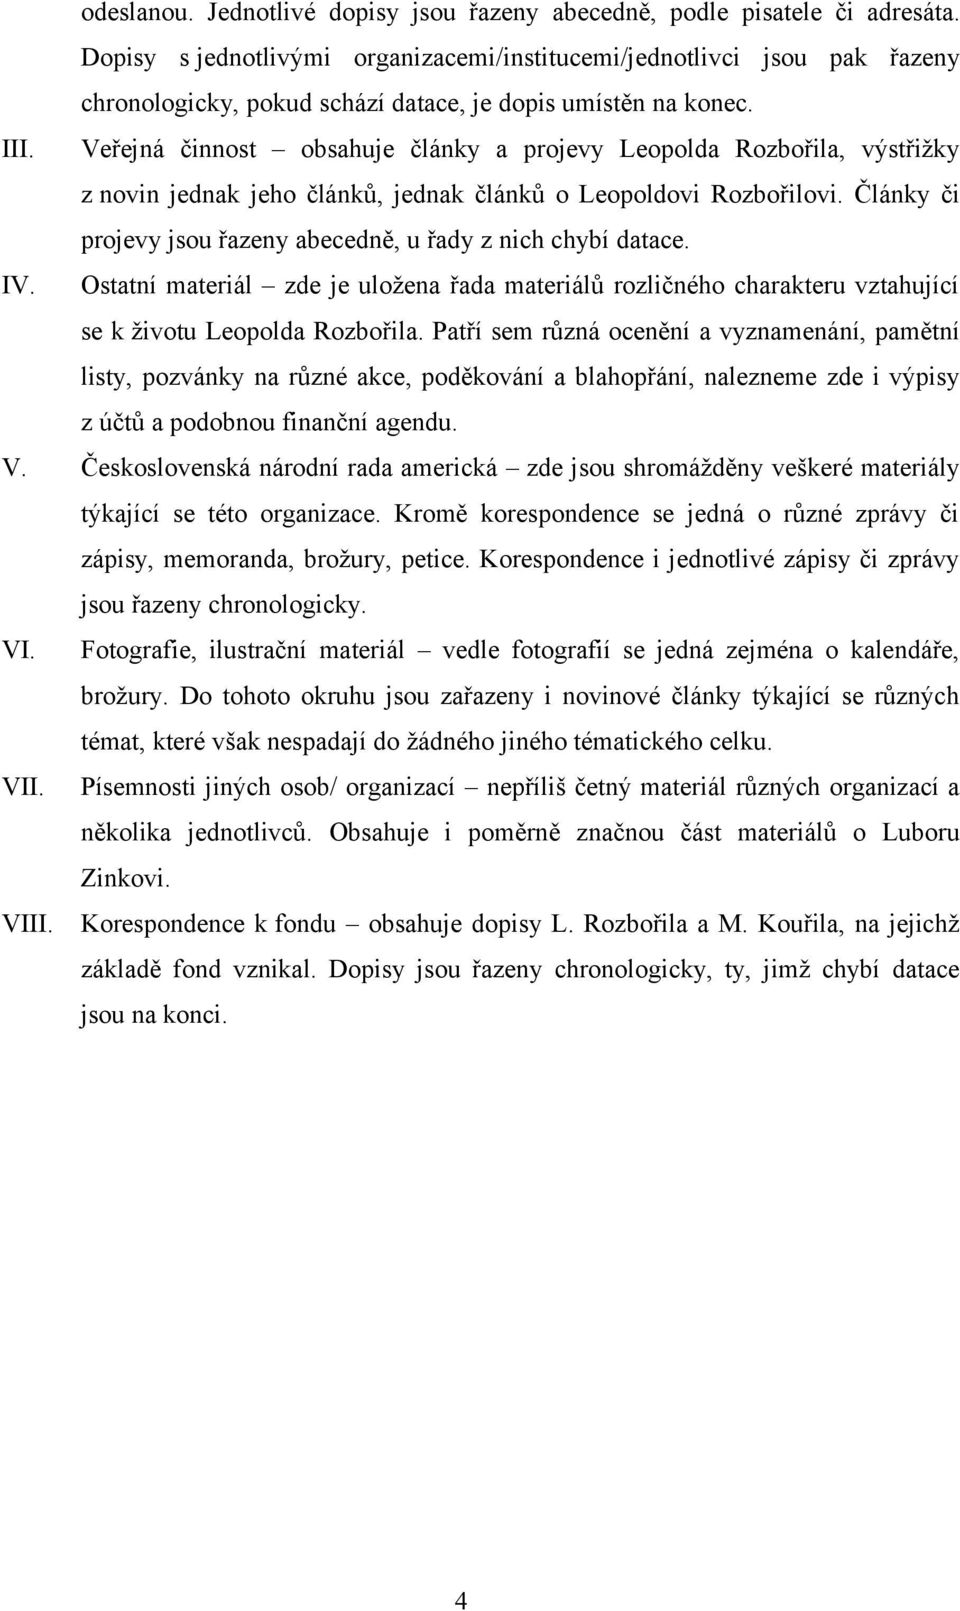 Veřejná činnost obsahuje články a projevy Leopolda Rozbořila, výstřižky z novin jednak jeho článků, jednak článků o Leopoldovi Rozbořilovi.